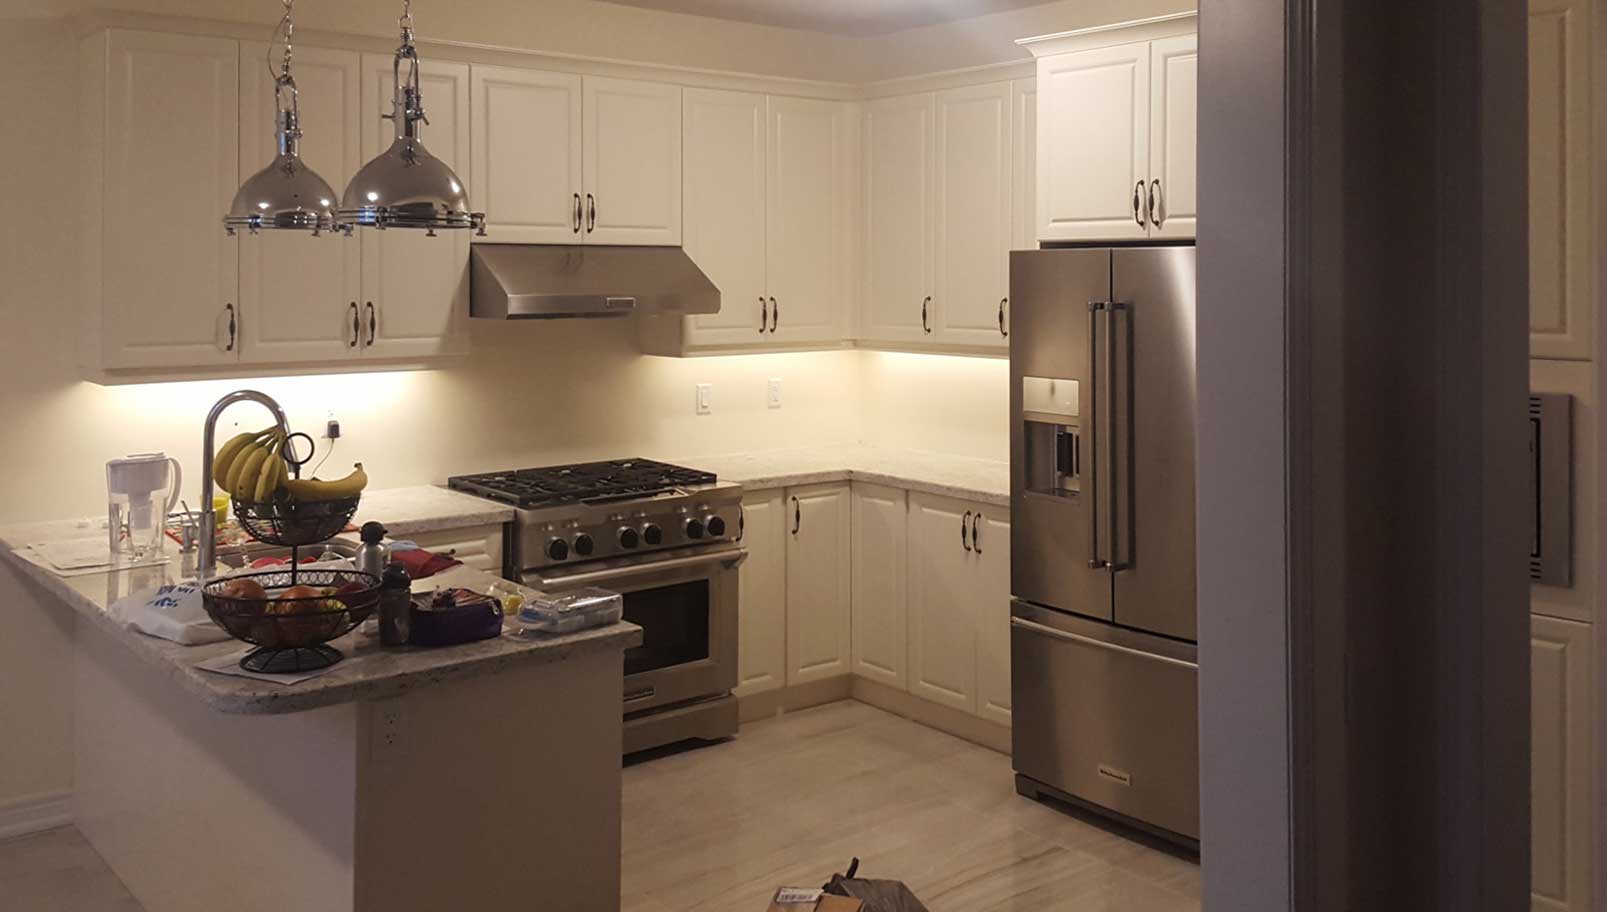 Modern kitchen lighting design cabinets 